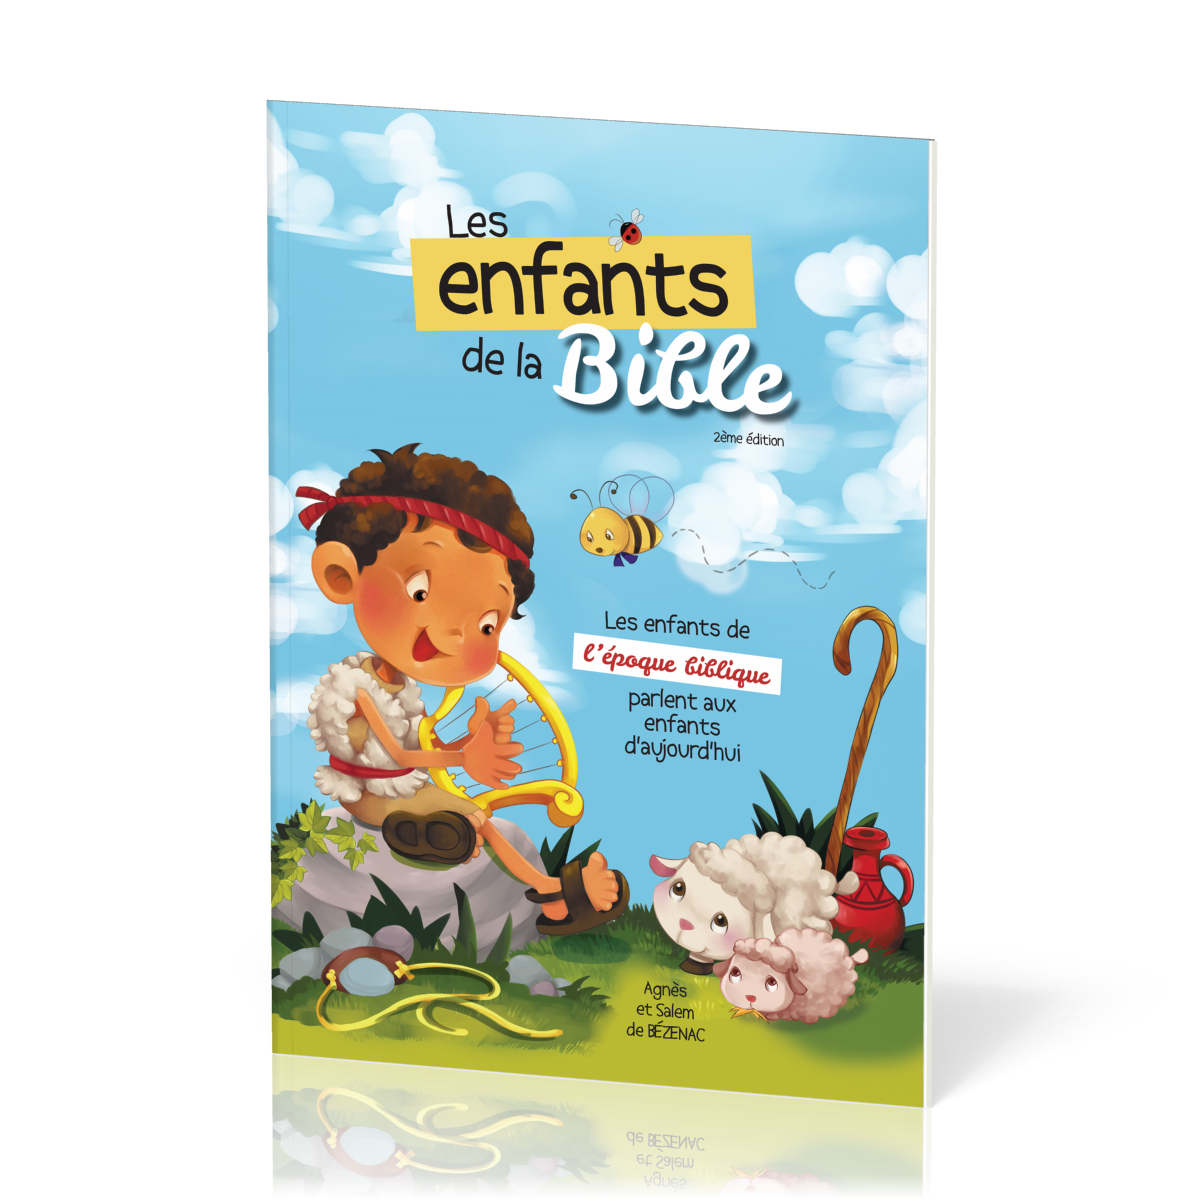 Enfants de la bible (Les) - 2ème édition